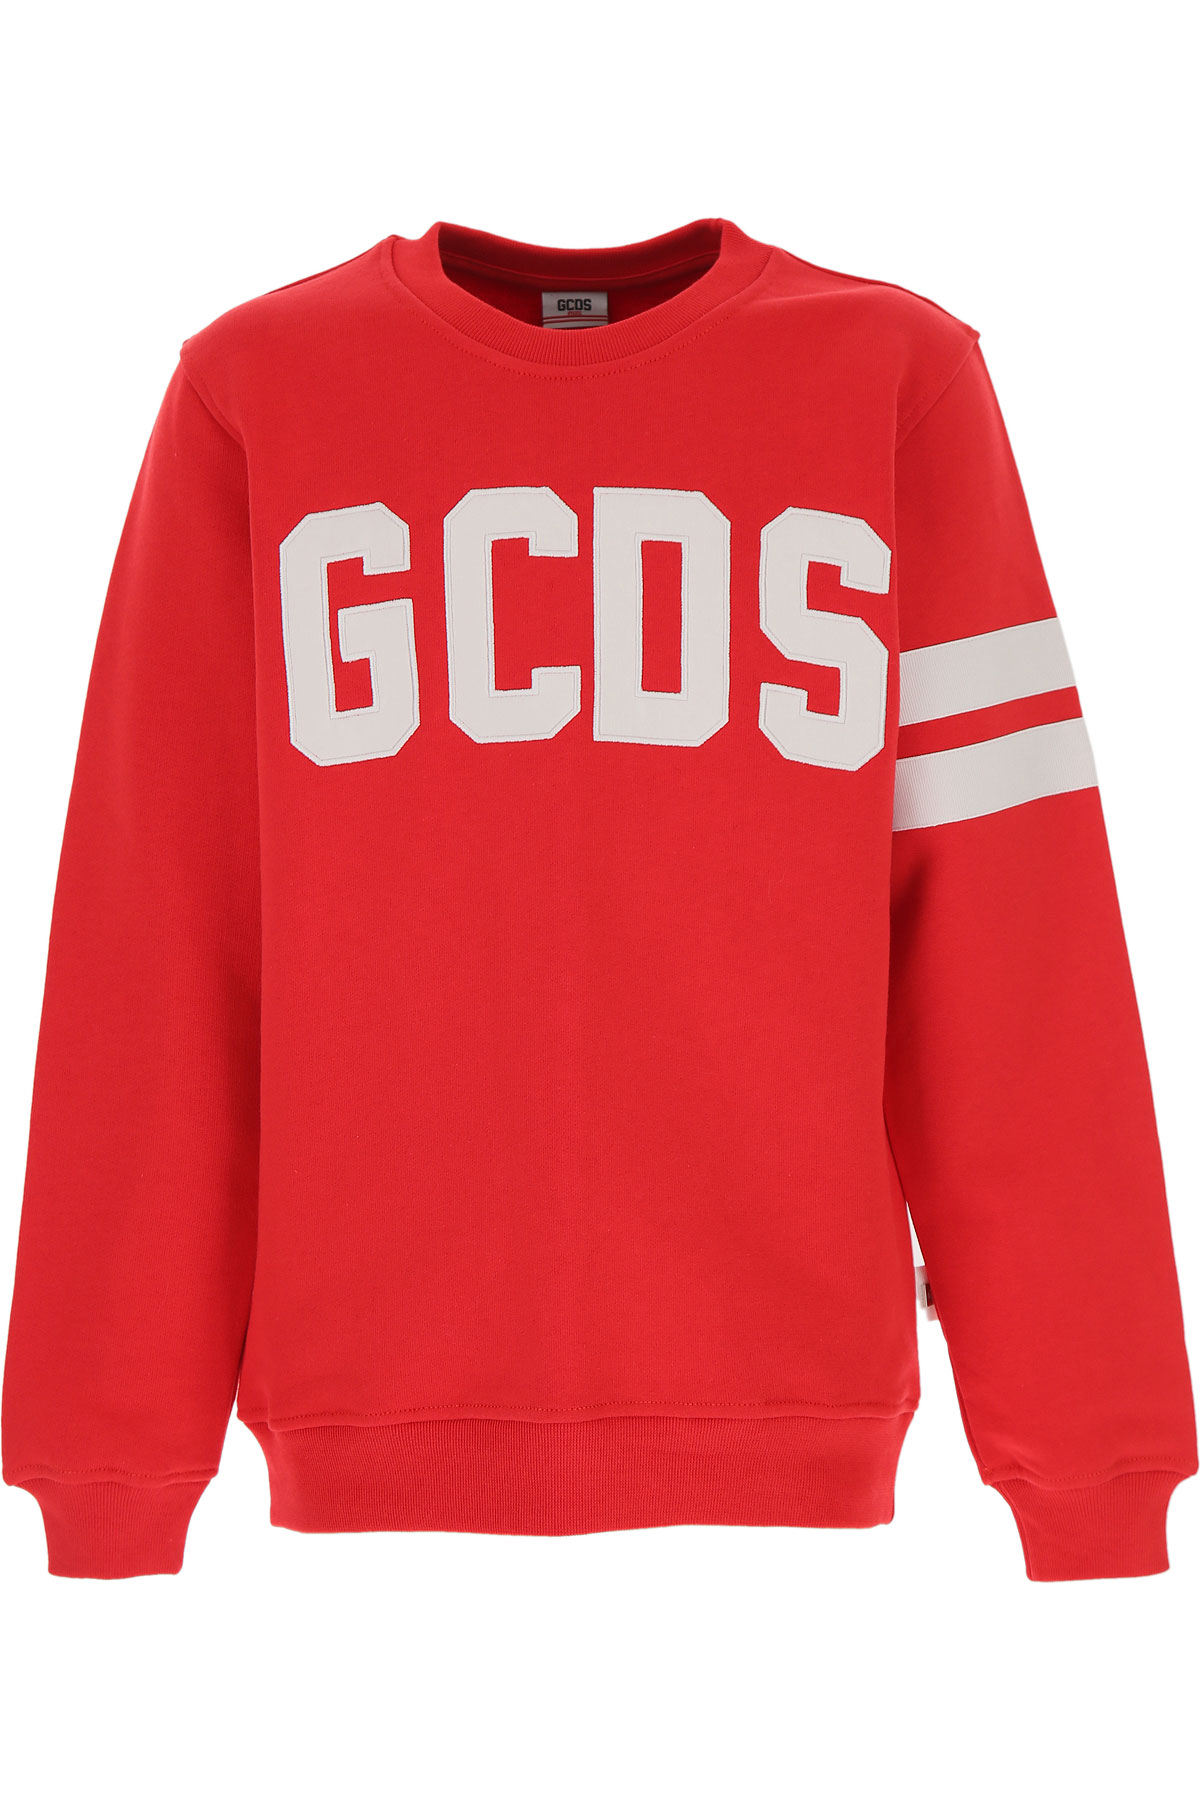 Kidswear GCDS, Style code: 020411-040-